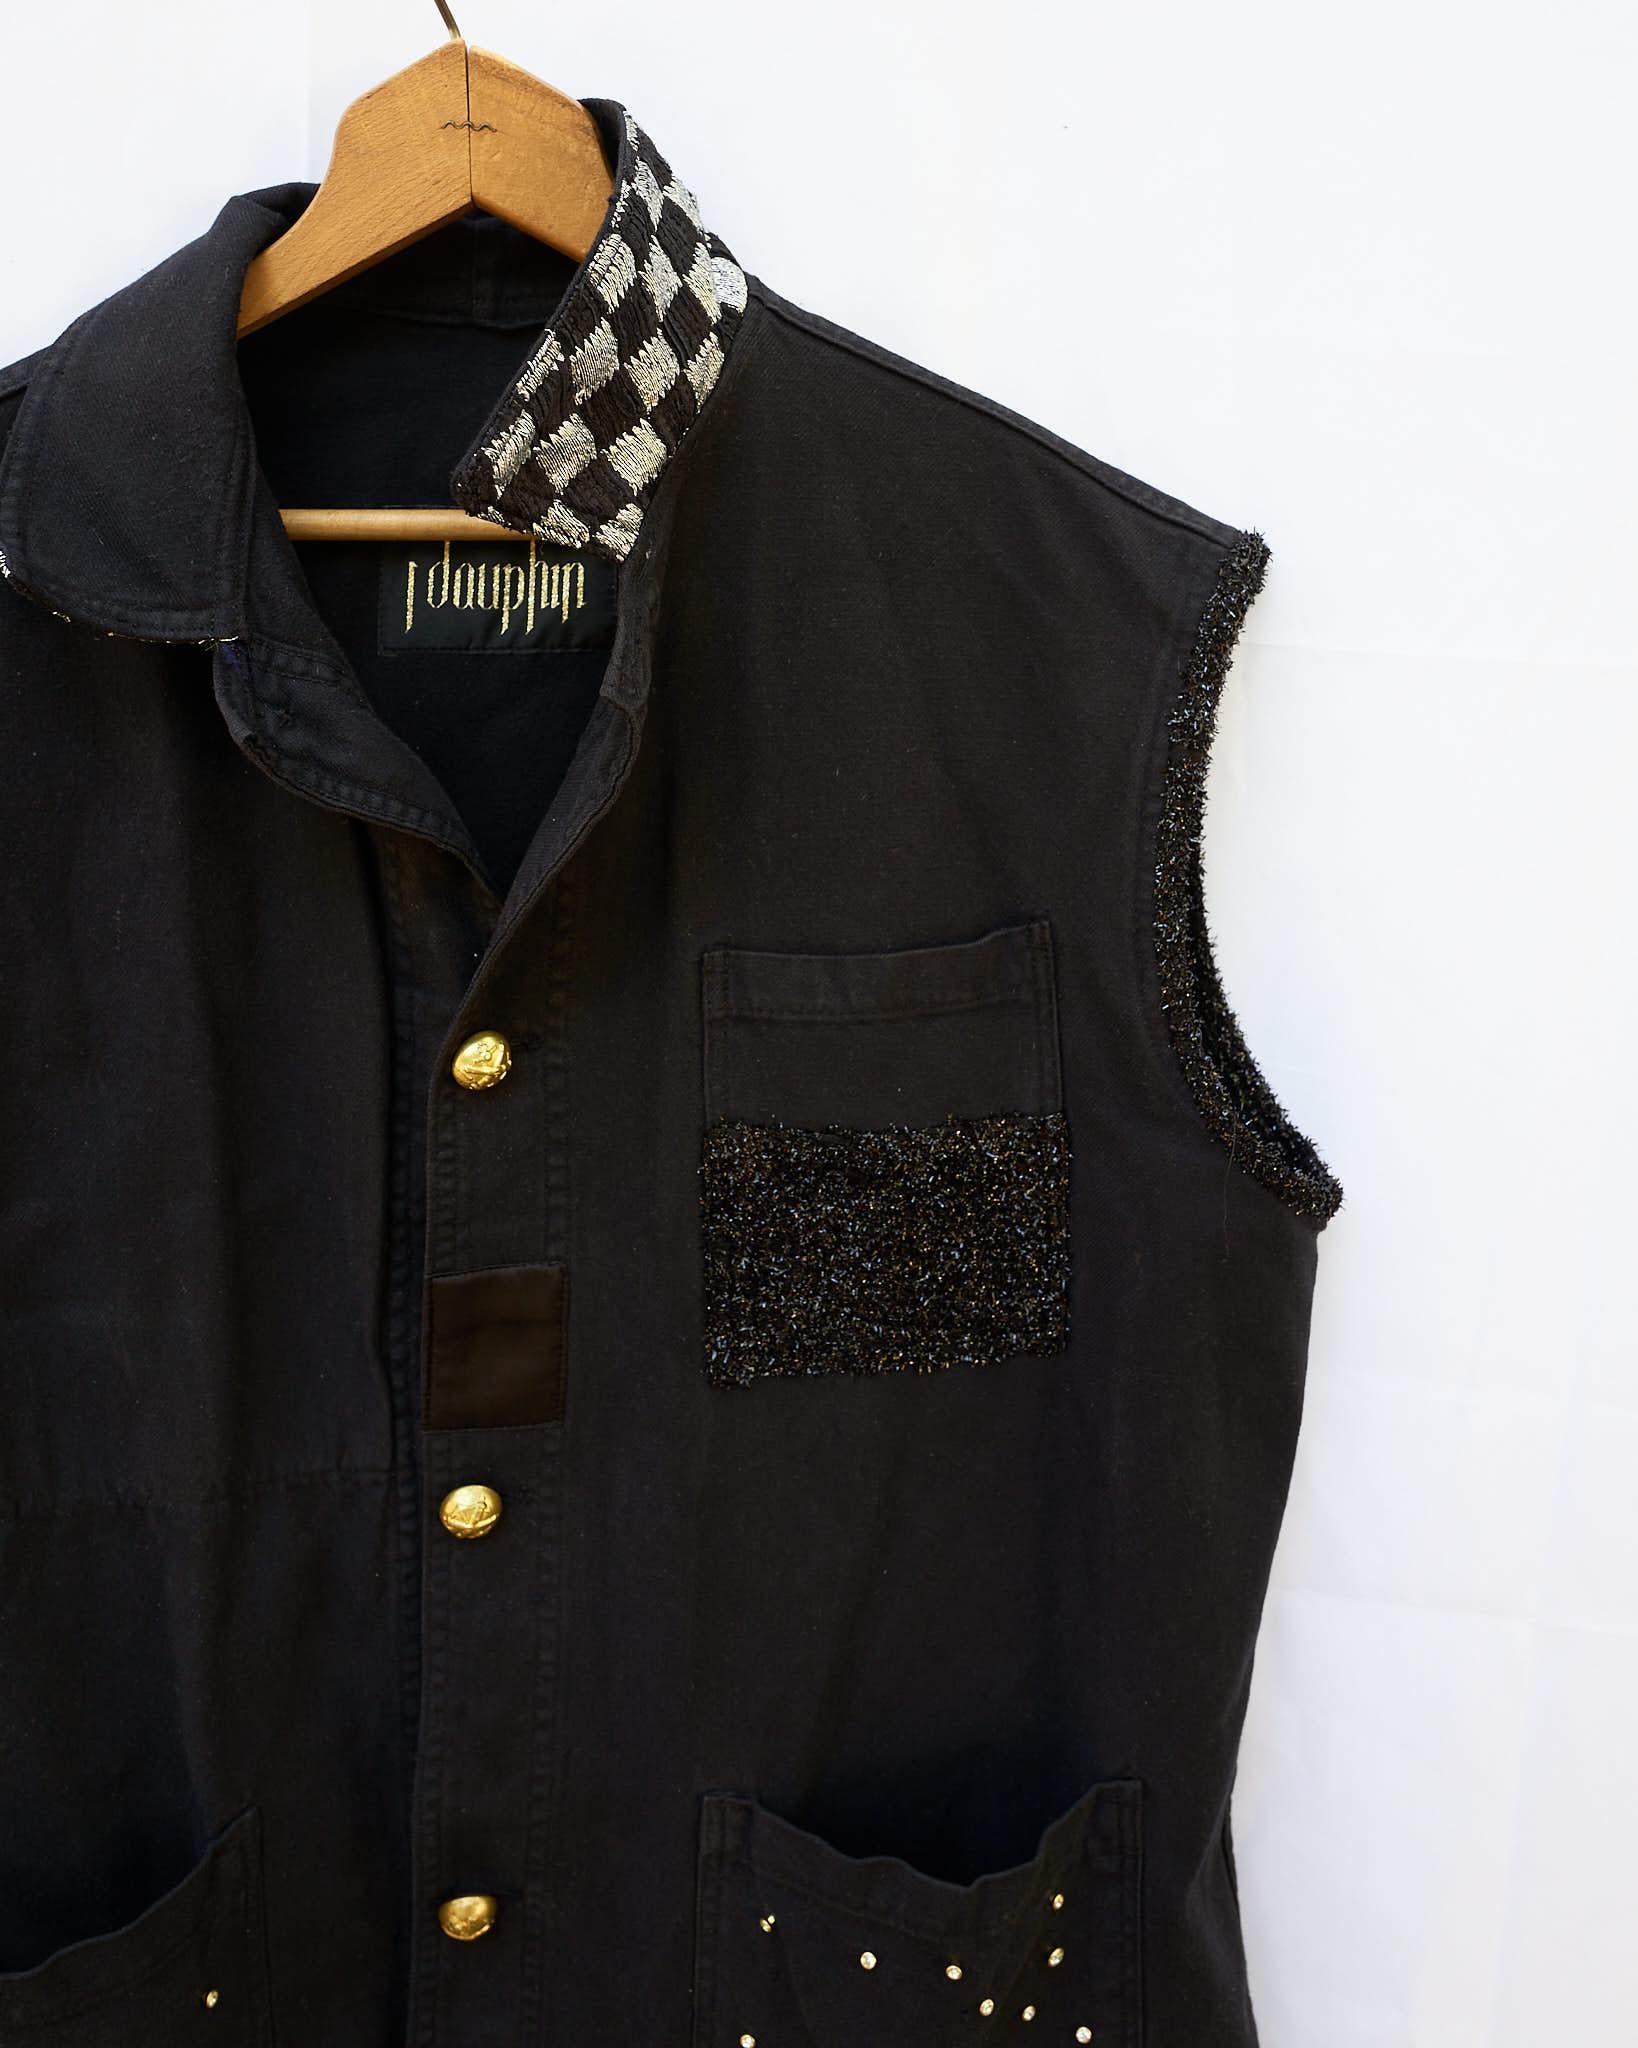 Sleeveless Jacket Vest Black Crystal Embellished Gold Buttons J Dauphin 1